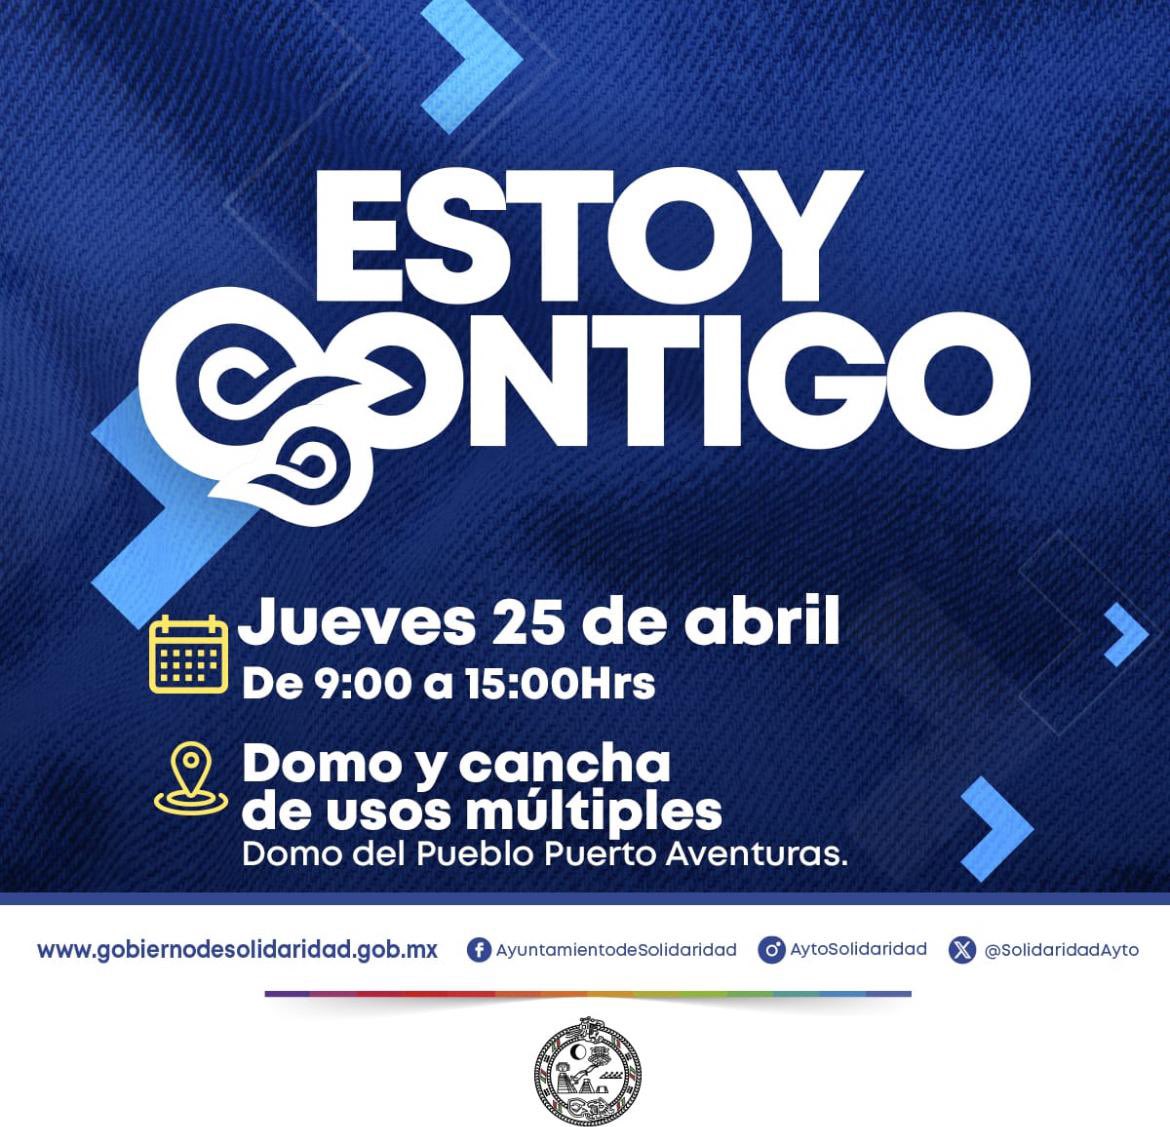 Programa #EstoyContigo 25 abril de 9 a 15hrs  domo #puertoaventuras